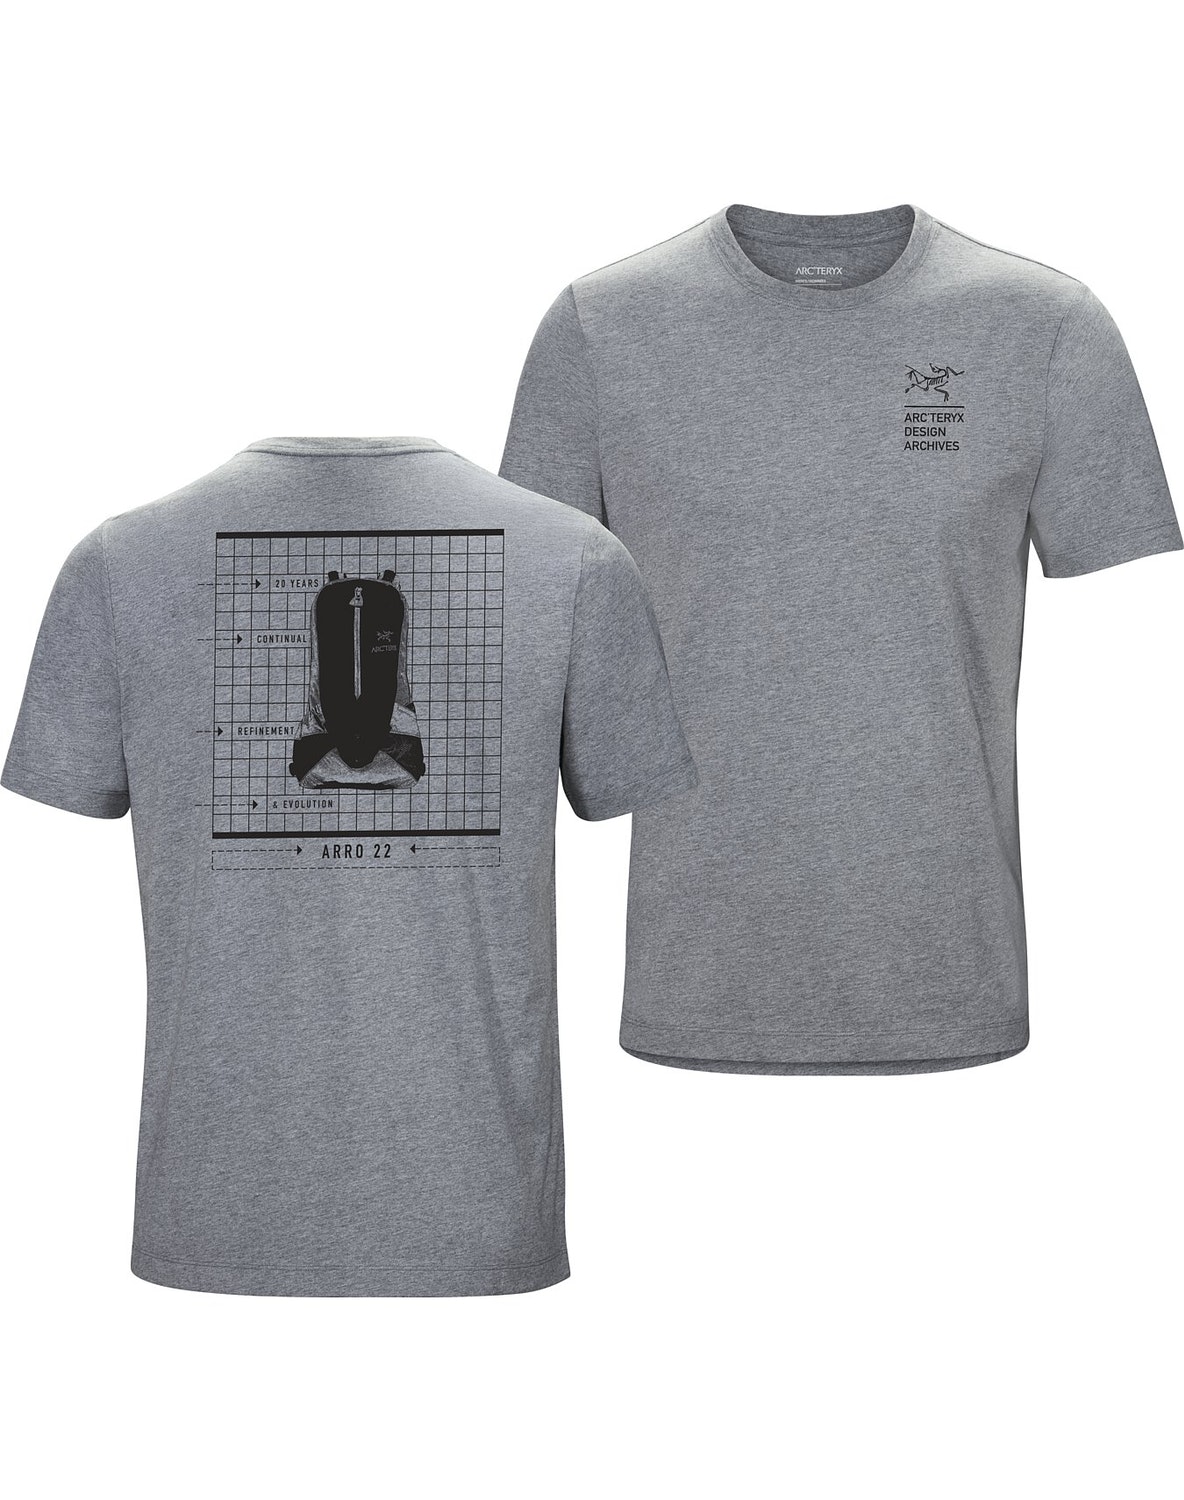 T-shirt Arc'teryx Arc'hive Uomo Grigie - IT-3465471